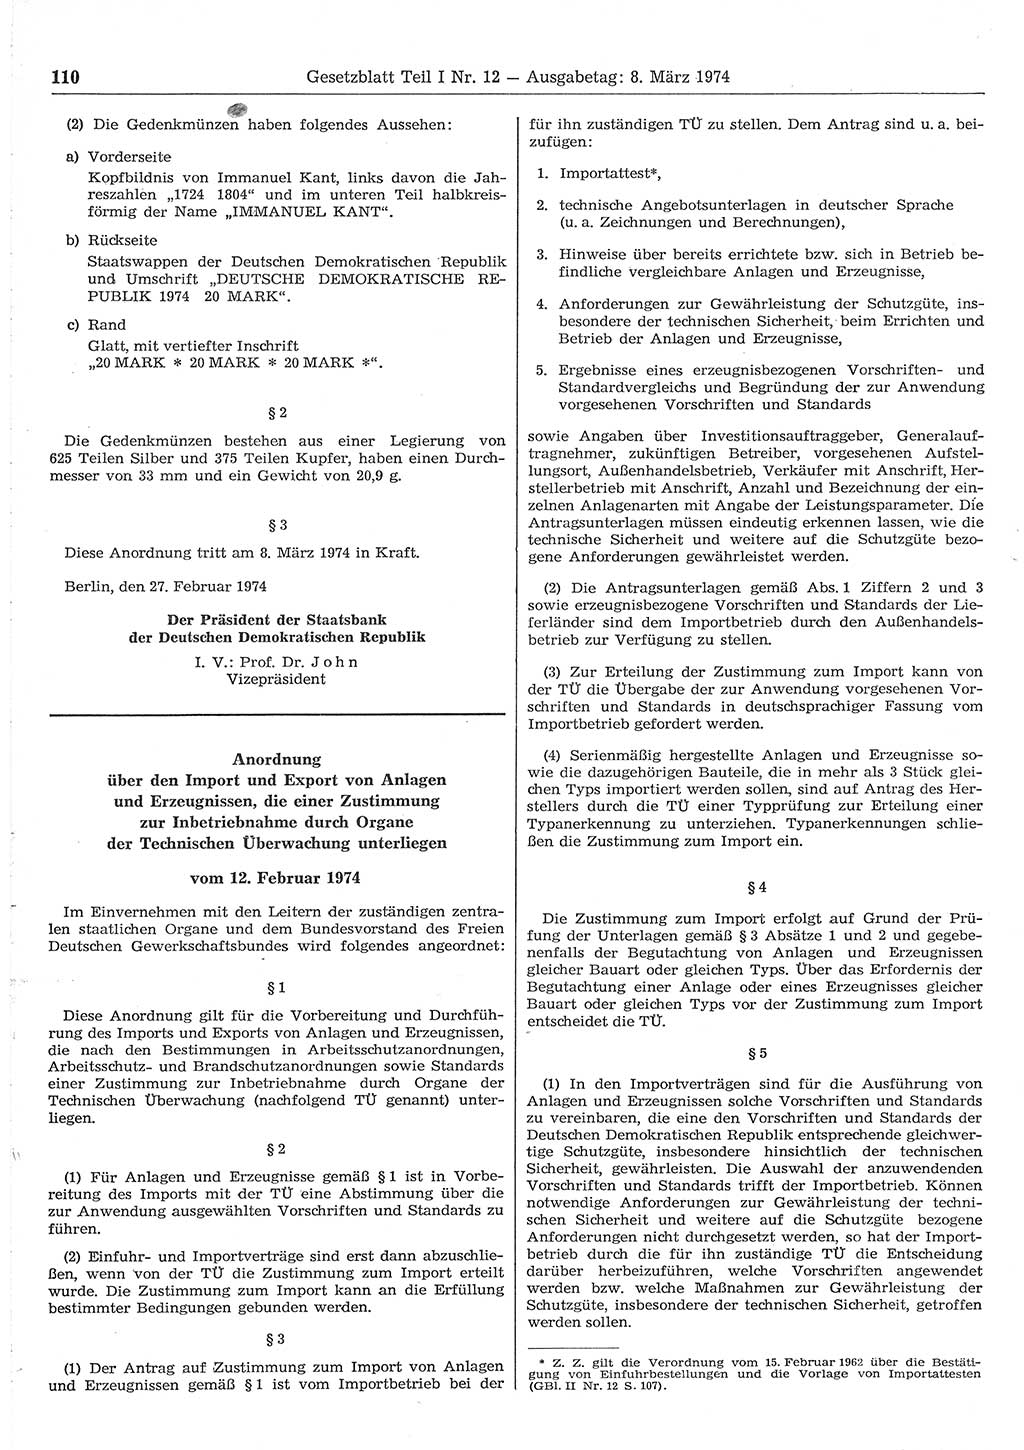 Gesetzblatt (GBl.) der Deutschen Demokratischen Republik (DDR) Teil Ⅰ 1974, Seite 110 (GBl. DDR Ⅰ 1974, S. 110)